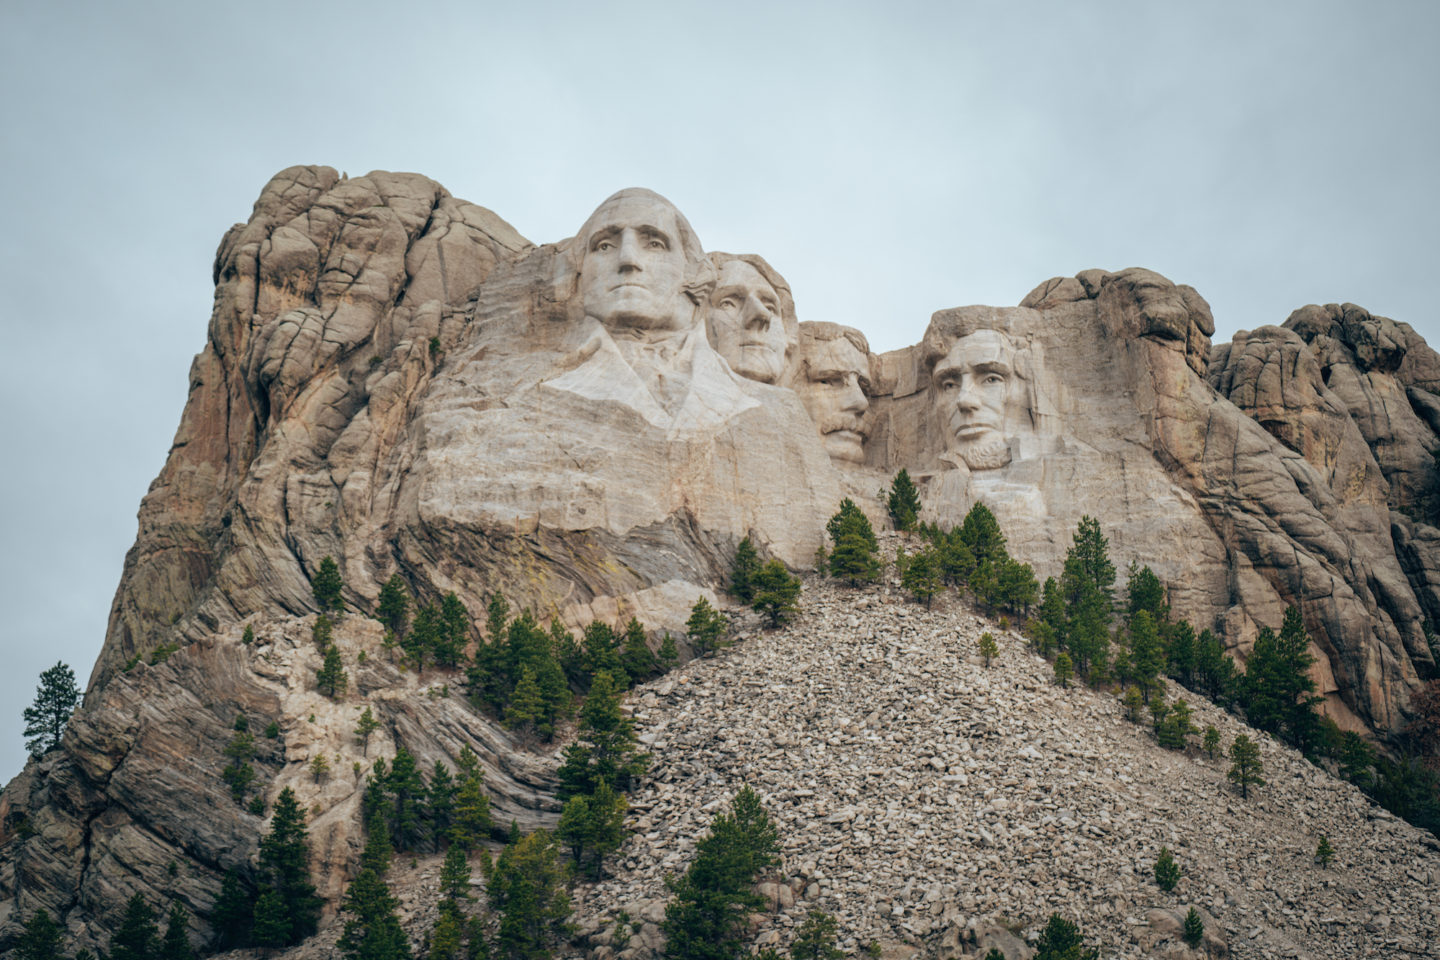 Mount Rushmore National Memorial - South Dakota